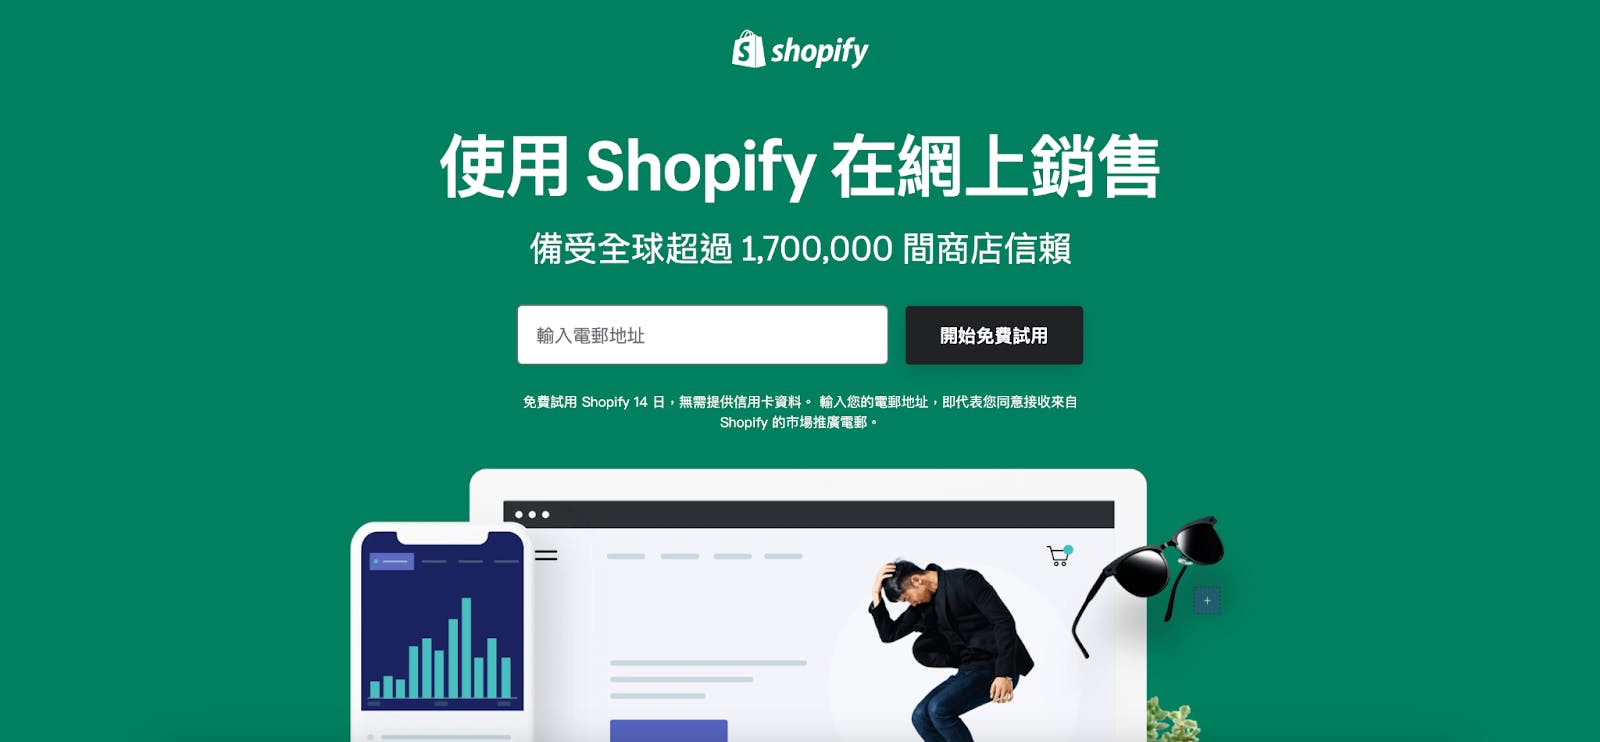 Start Shopify